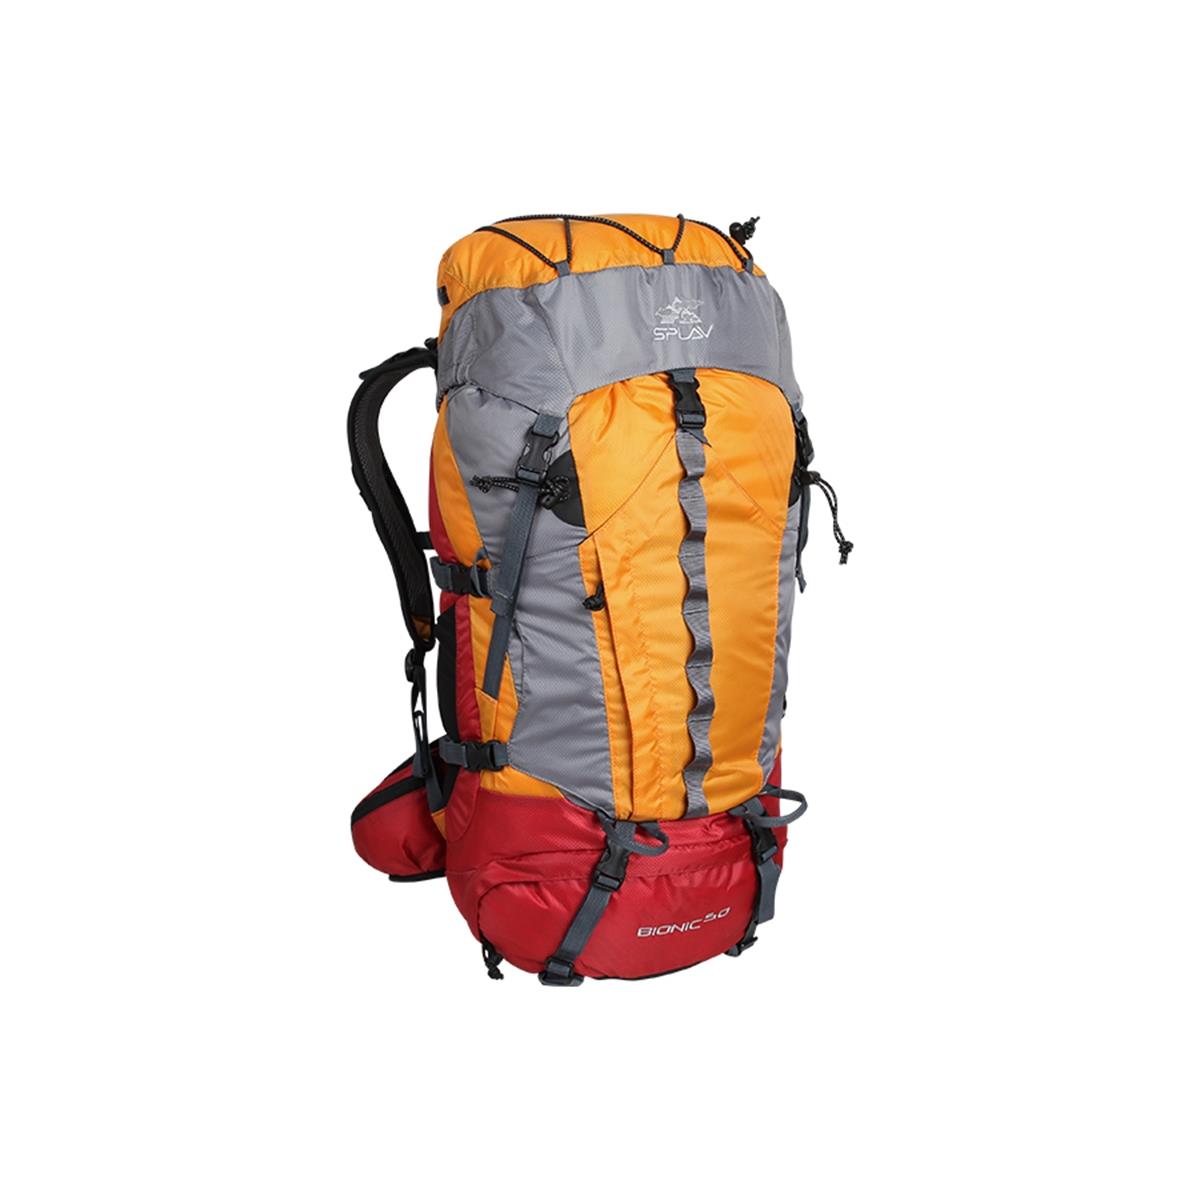 Рюкзак Bionic 50 оранжевый СПЛАВ рюкзак на молнии 2 наружных кармана тёмно серый